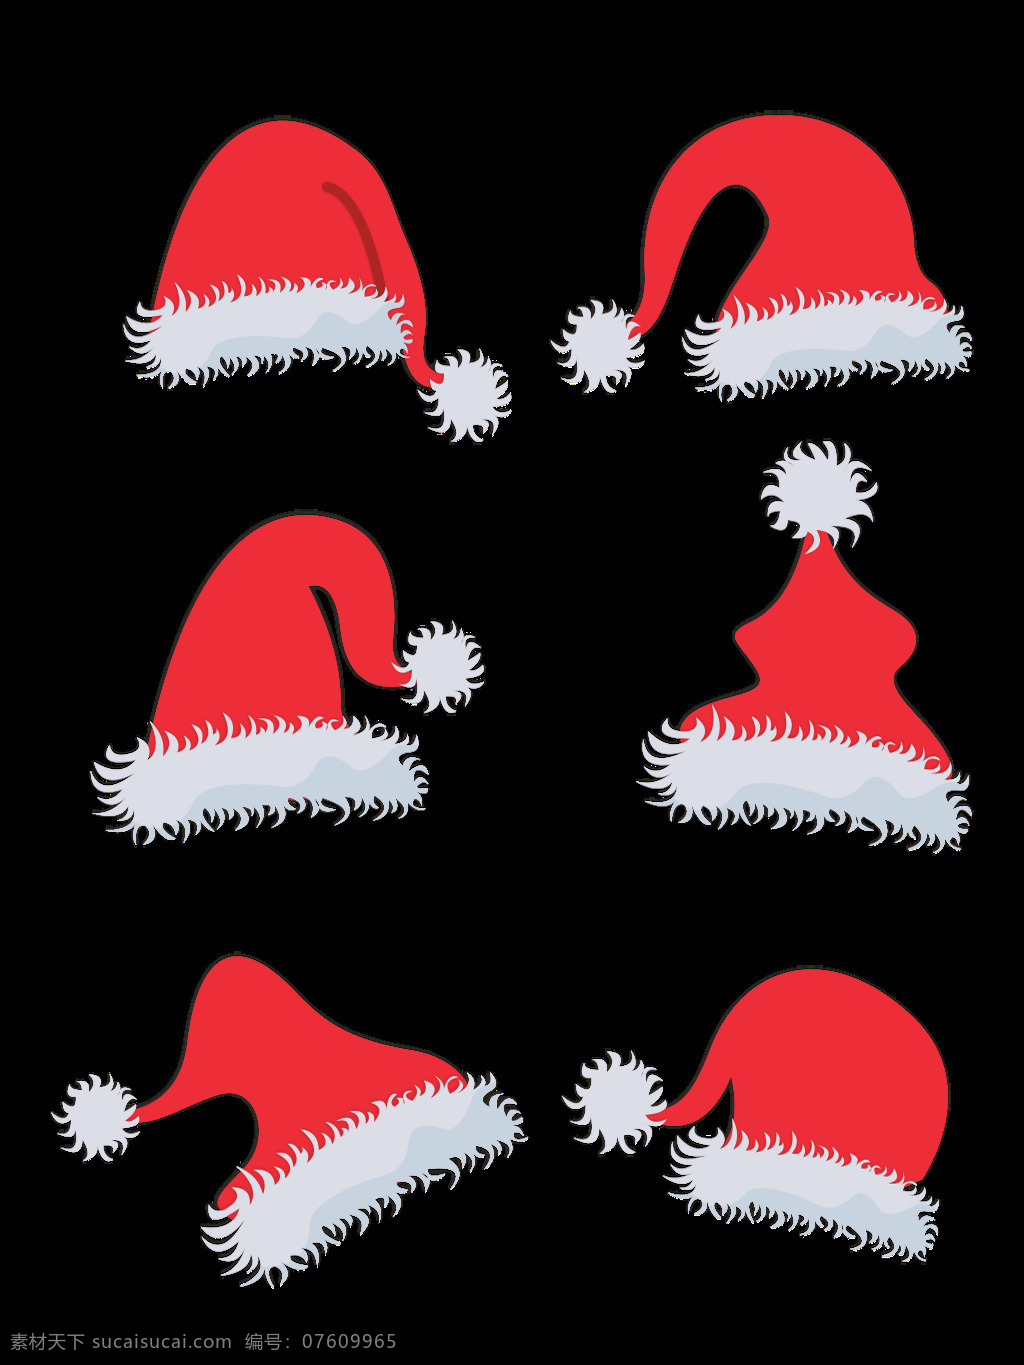 圣诞节 元素 卡通 可爱 简约 圣诞 帽 节日 元素设计 圣诞帽